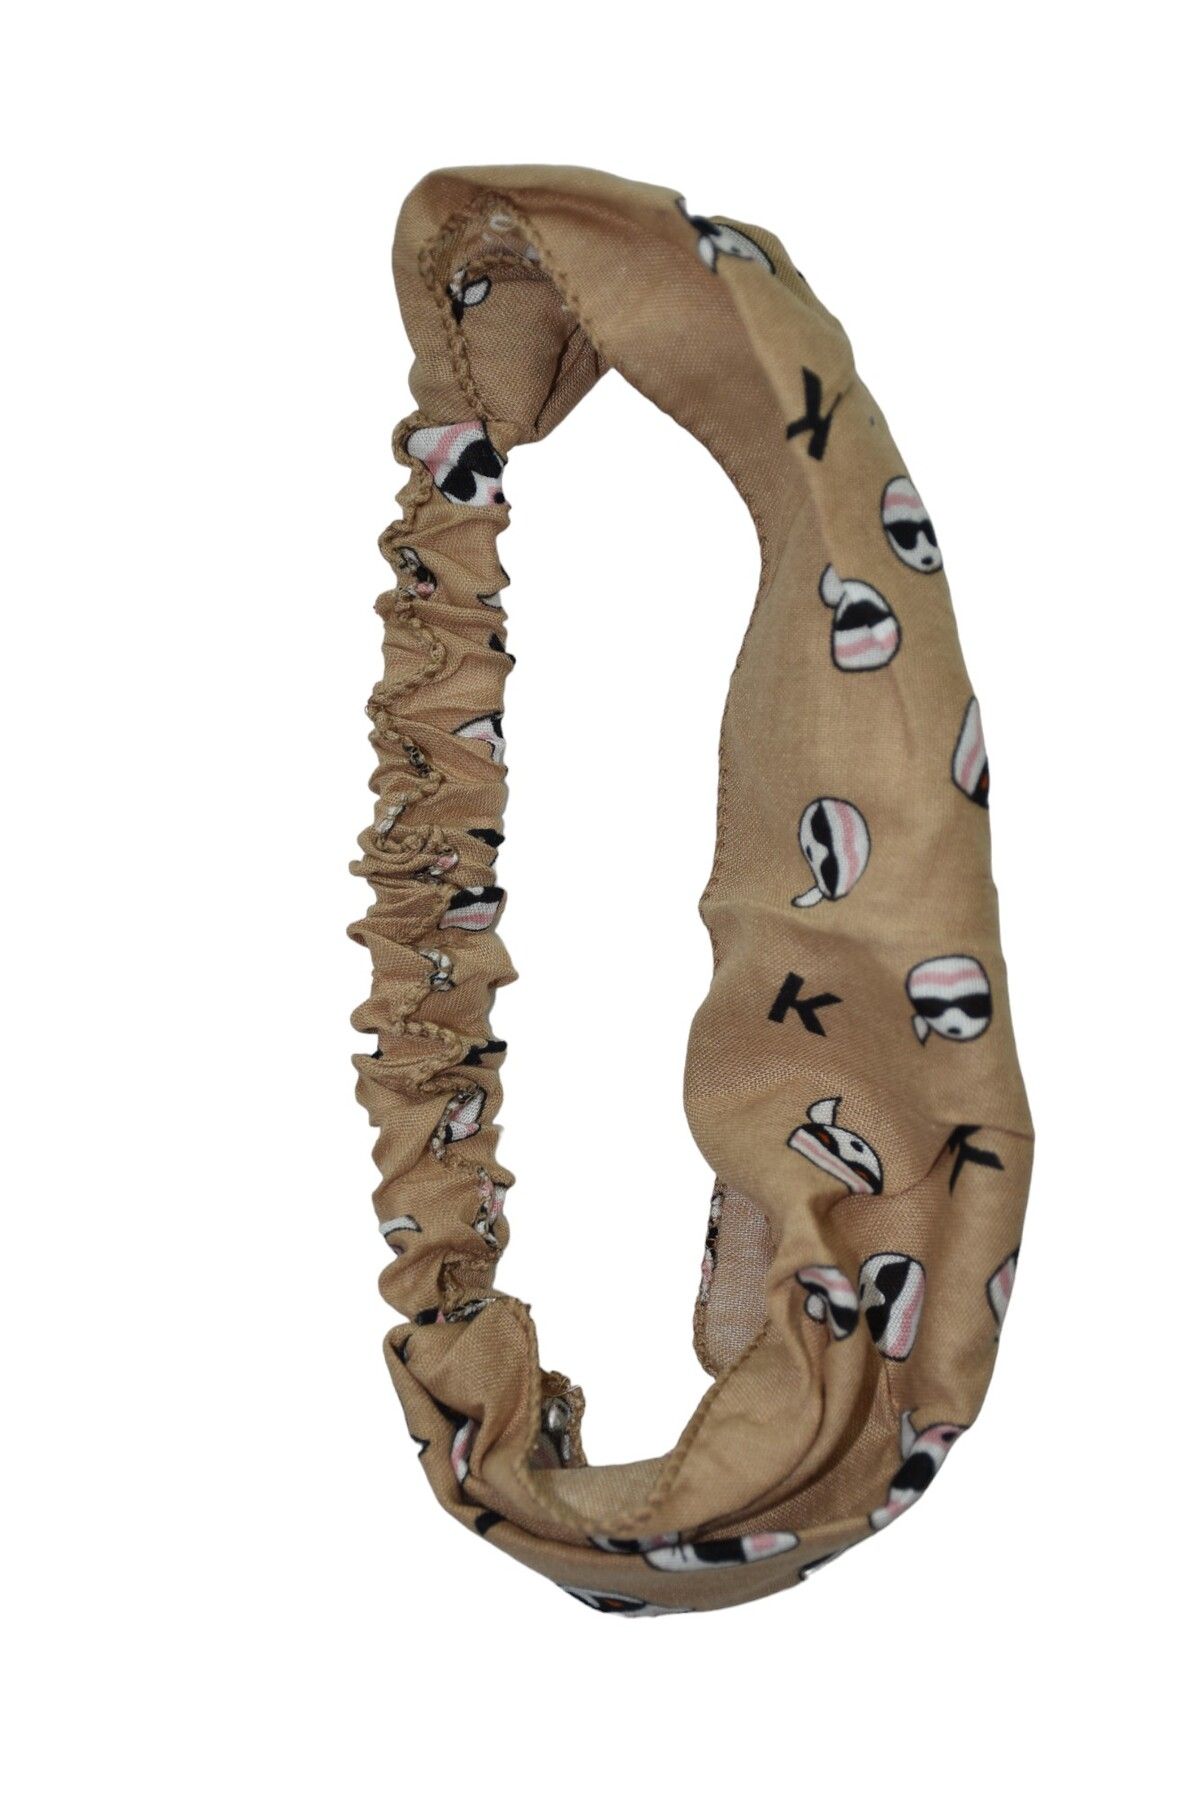 YELPAZE DÜNYASI Kedili Saç Bandı Paraşüt Model